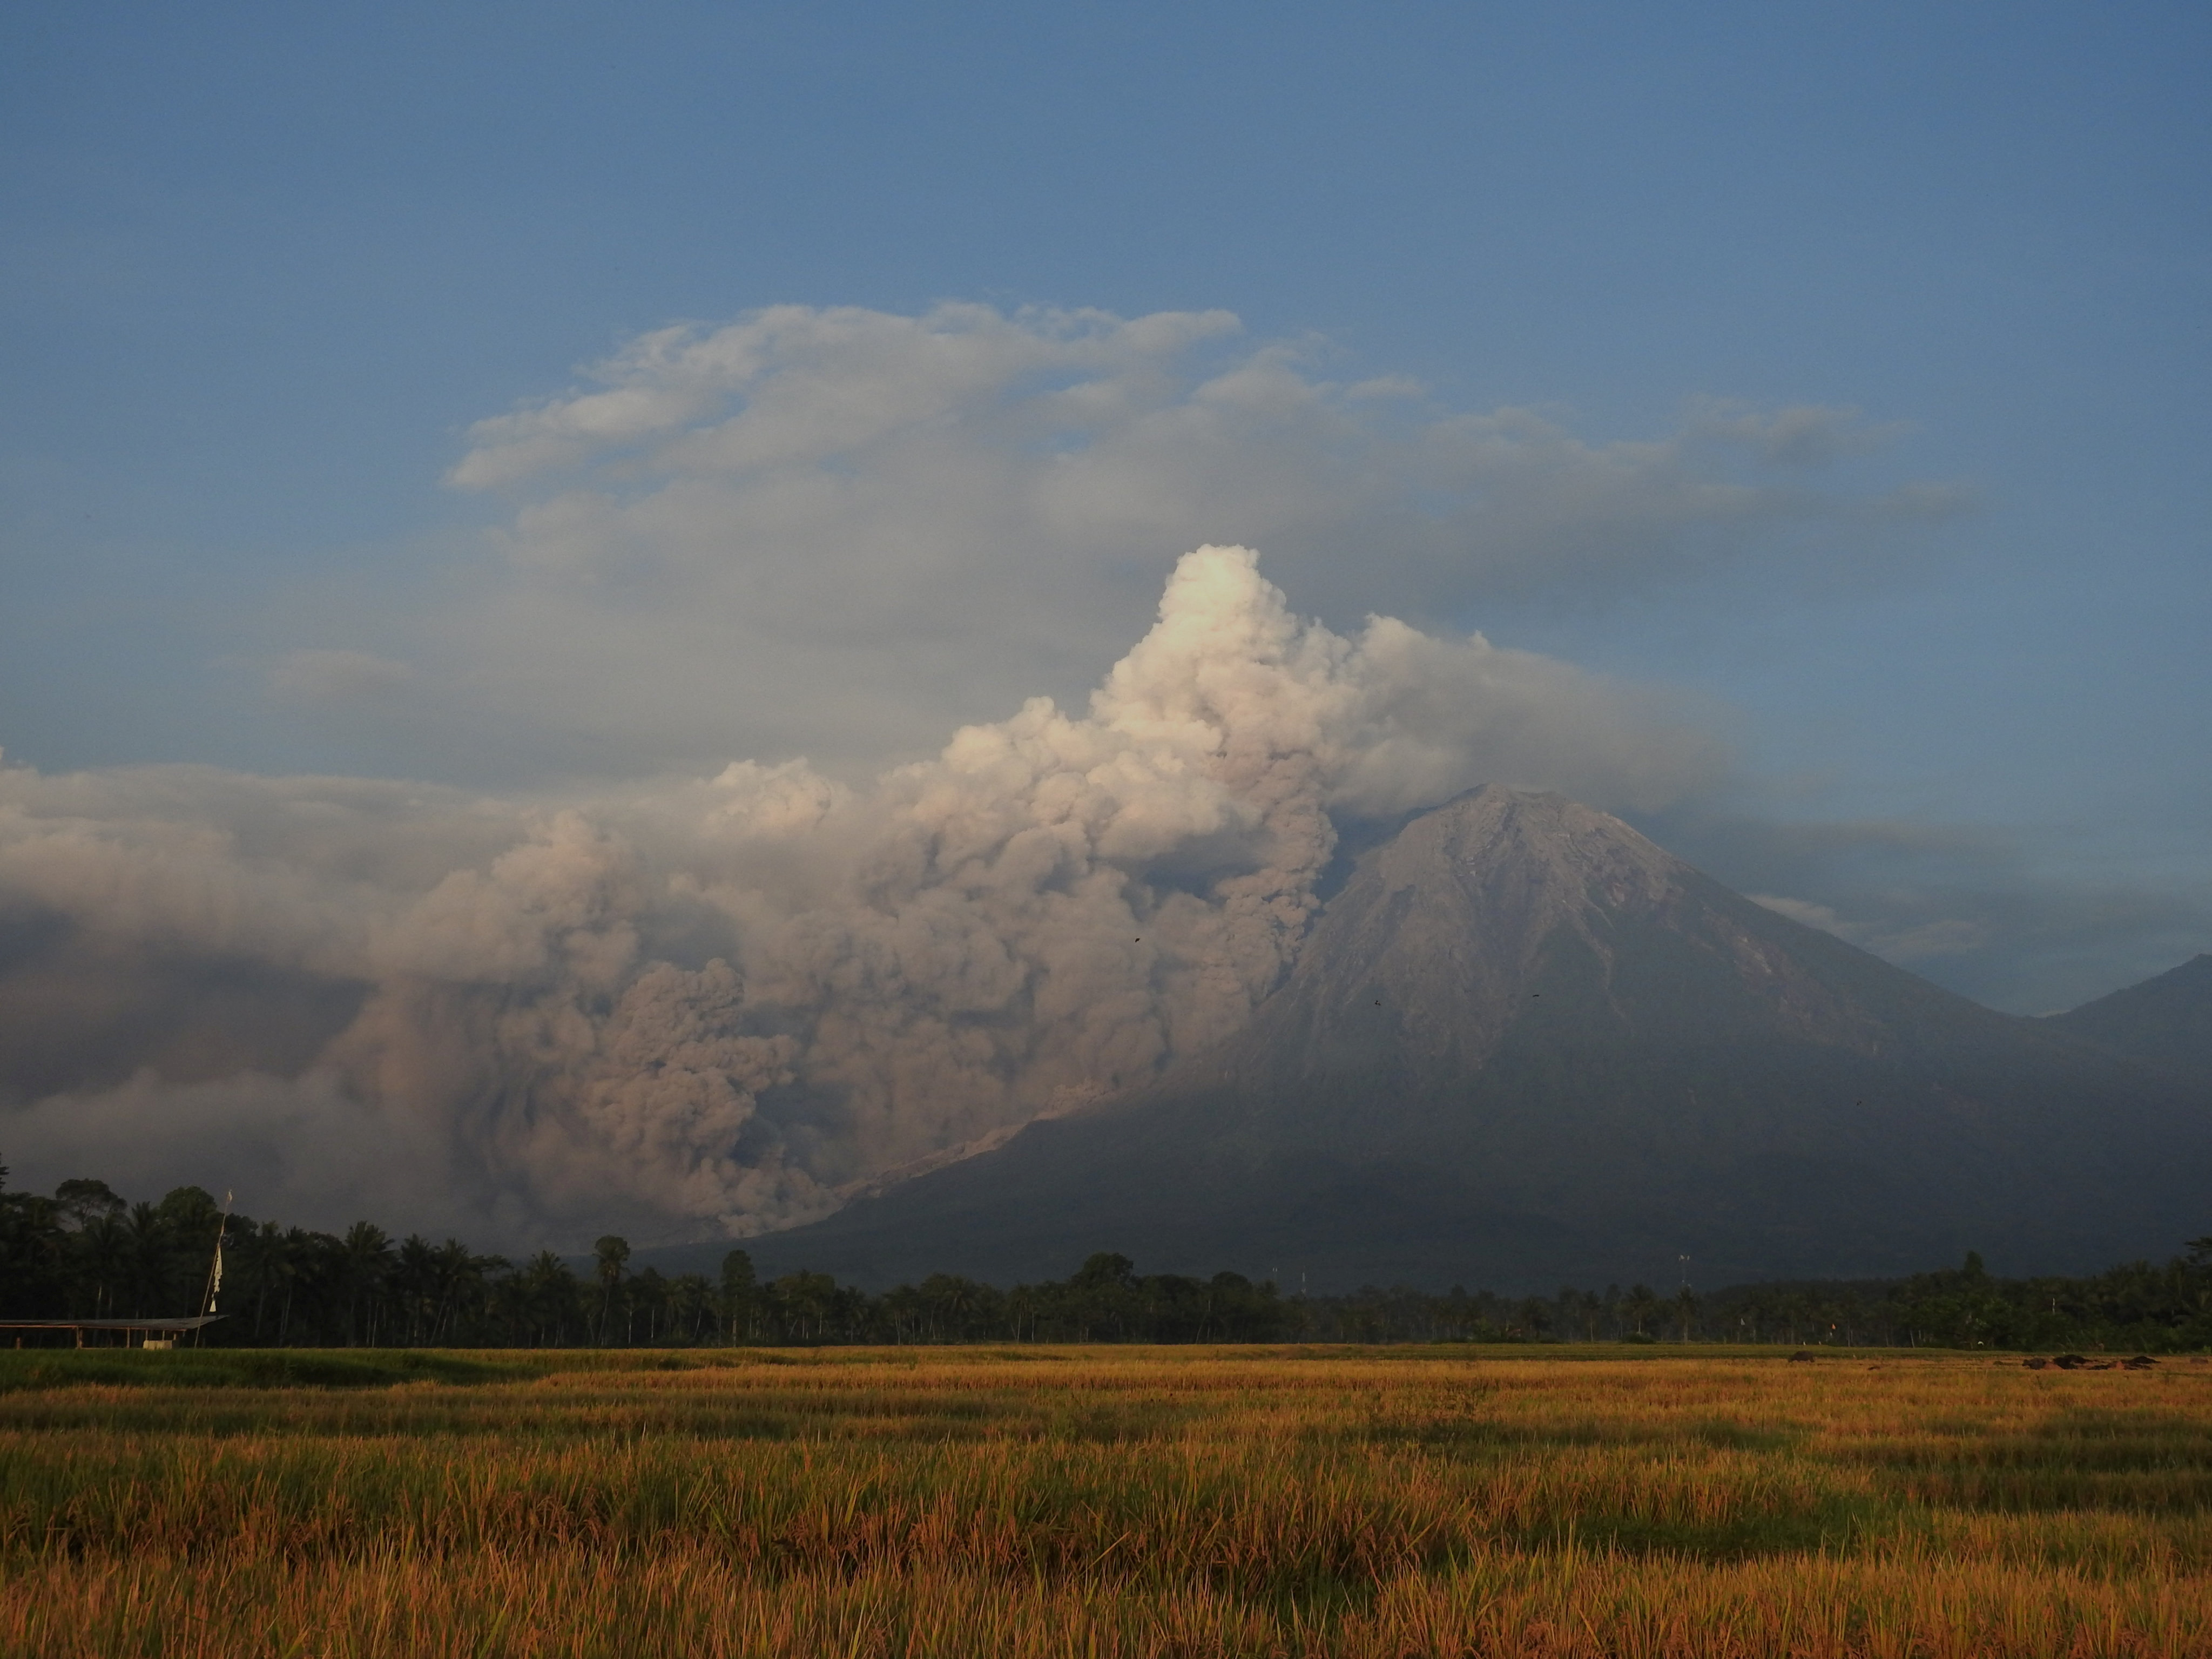 Indonesia's Semeru volcano has erupted